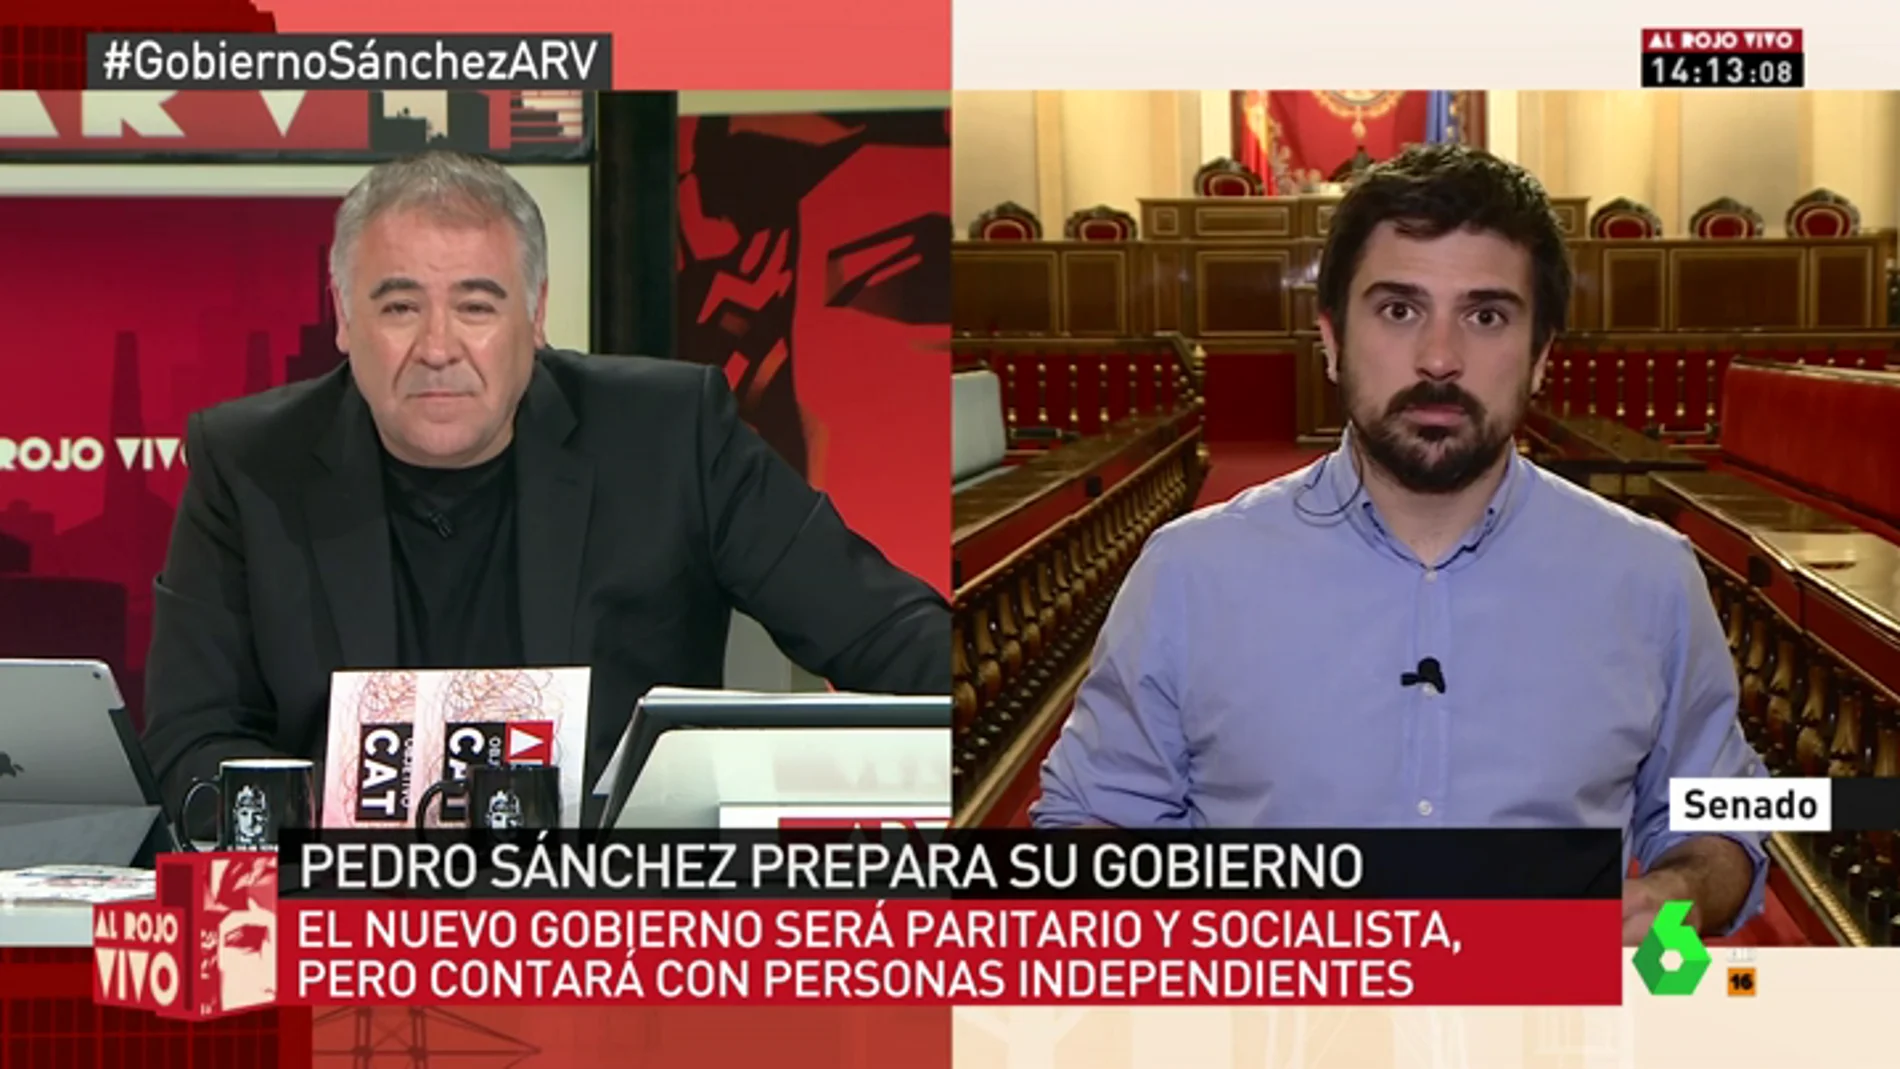 <p>Ramón Espinar: "El PP está disparando en círculos y en una actitud macarra y contraria a los intereses del país"</p>